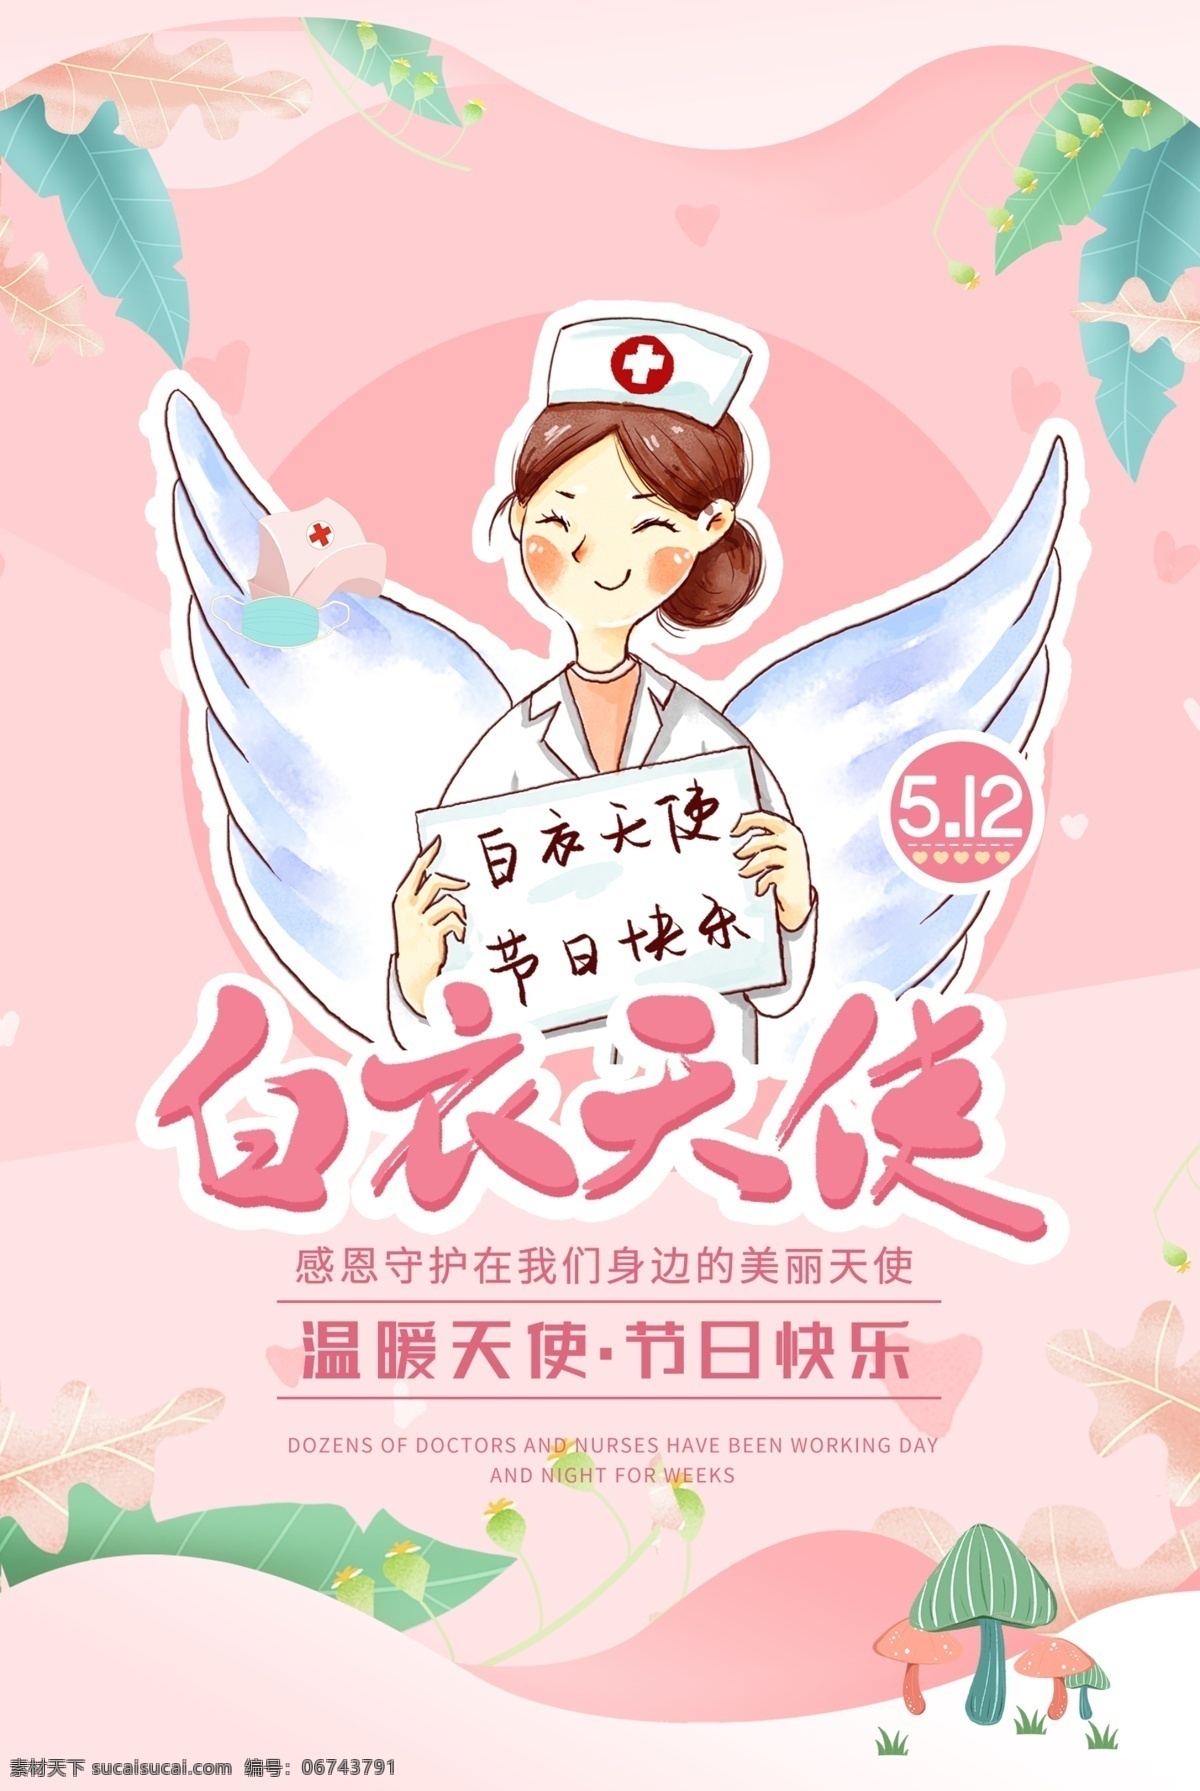 白衣天使 护士节 宣传海报 光环 国际护士节 海报 护士